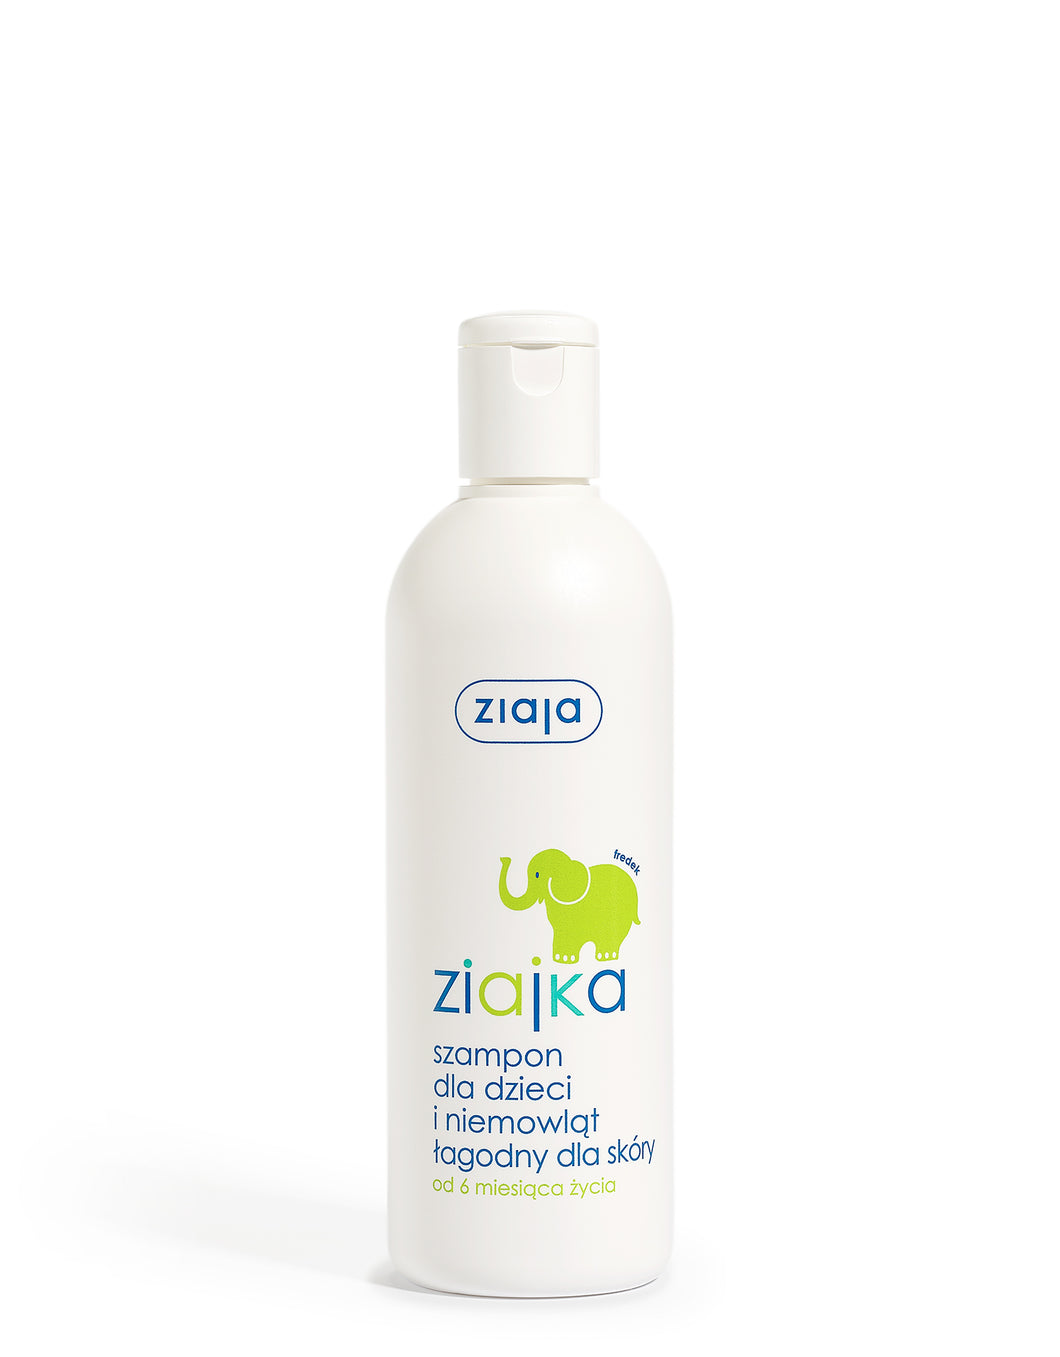 ZIAJKA szampon dla dzieci i niemowląt, delikatny dla skóry 270 ml 